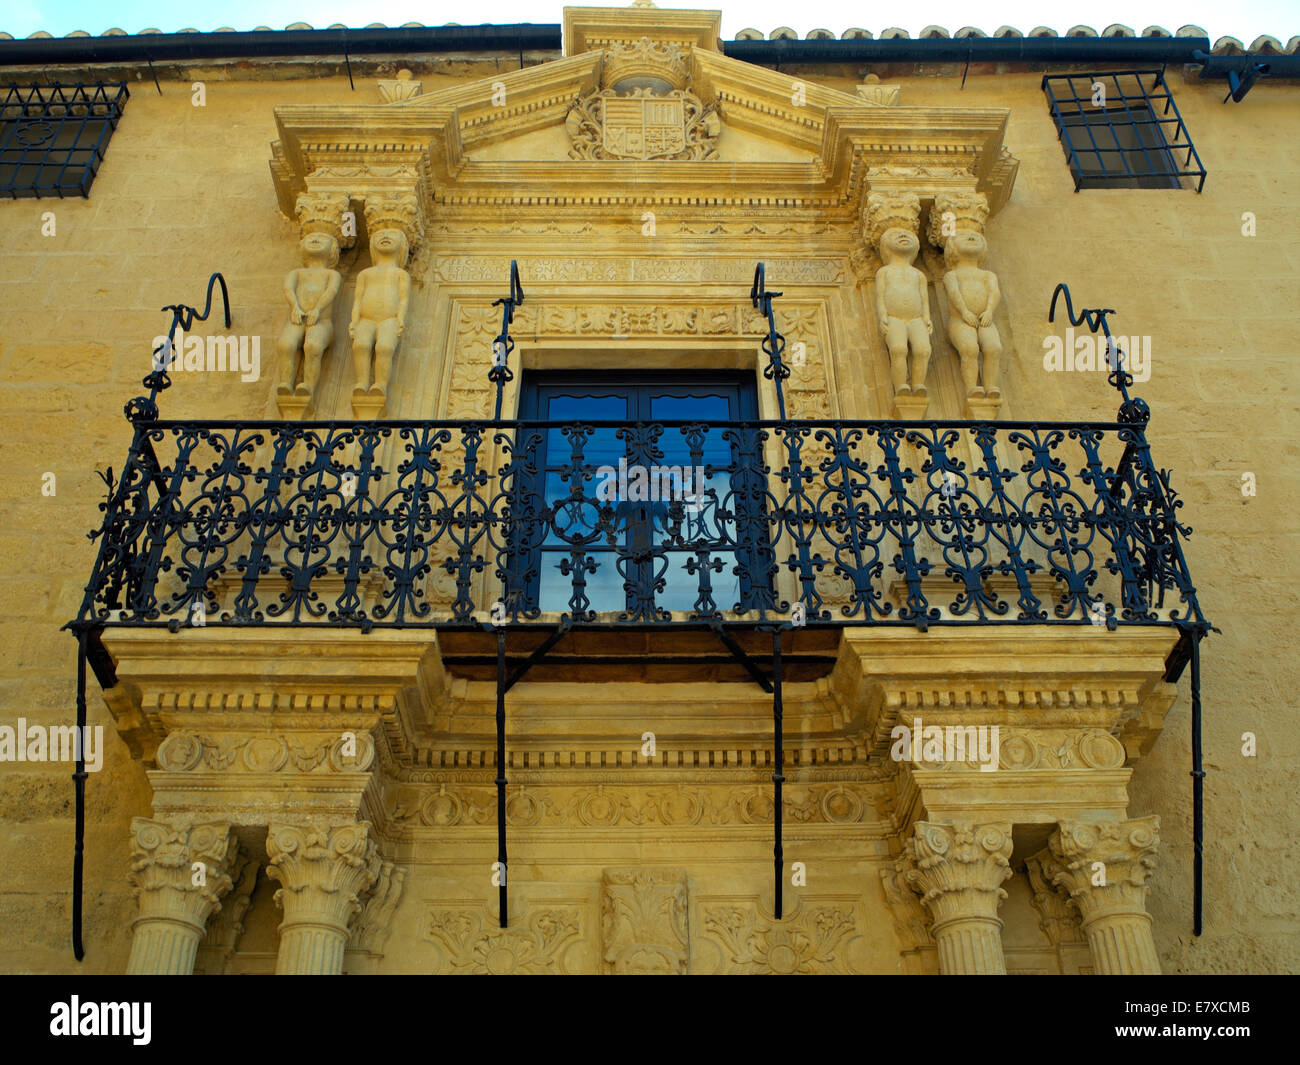 A palace facade in Ronda Stock Photo